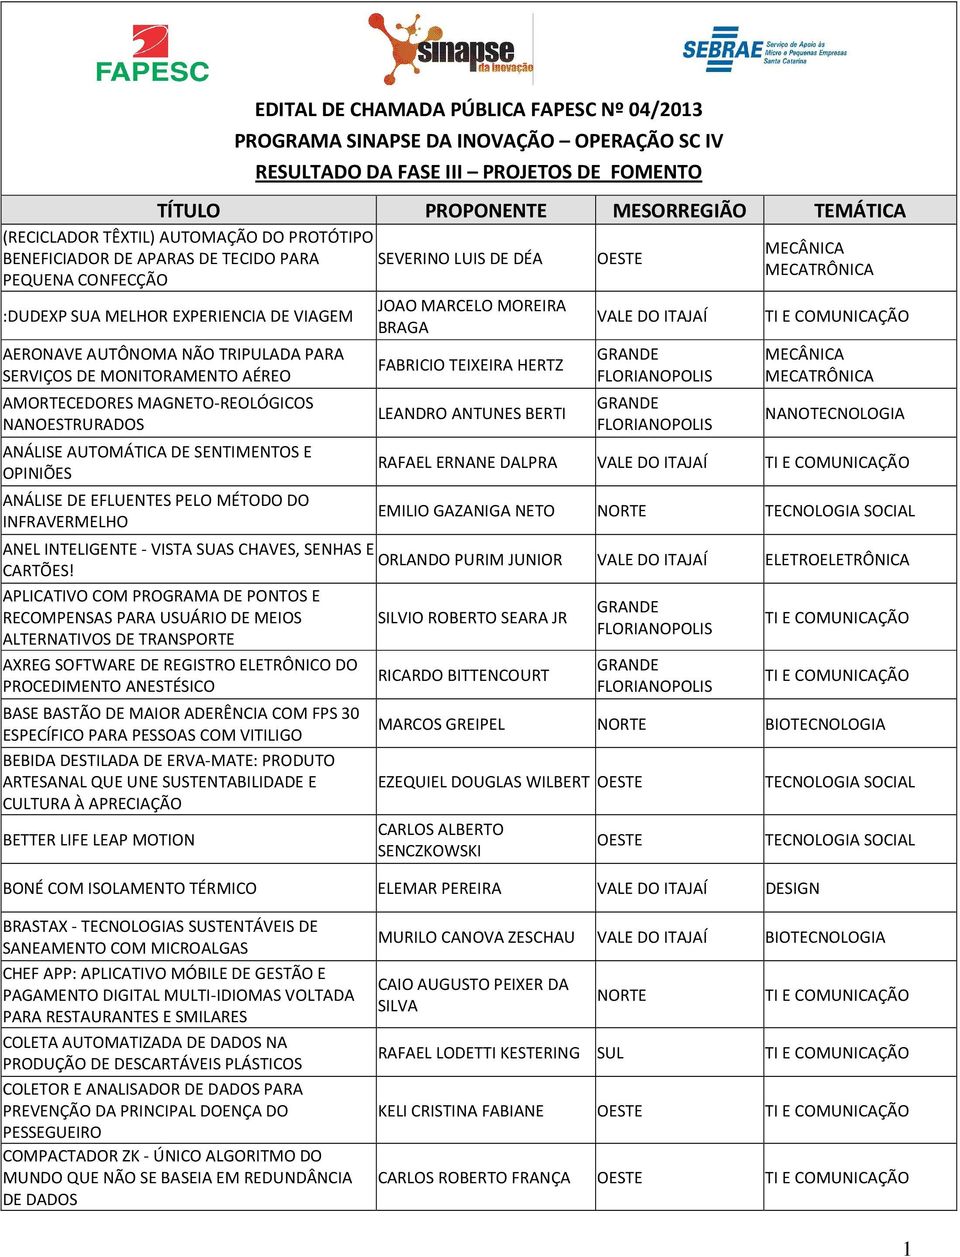 SERVIÇOS DE MONITORAMENTO AÉREO AMORTECEDORES MAGNETO-REOLÓGICOS NANOESTRURADOS ANÁLISE AUTOMÁTICA DE SENTIMENTOS E OPINIÕES ANÁLISE DE EFLUENTES PELO MÉTODO DO INFRAVERMELHO FABRICIO TEIXEIRA HERTZ